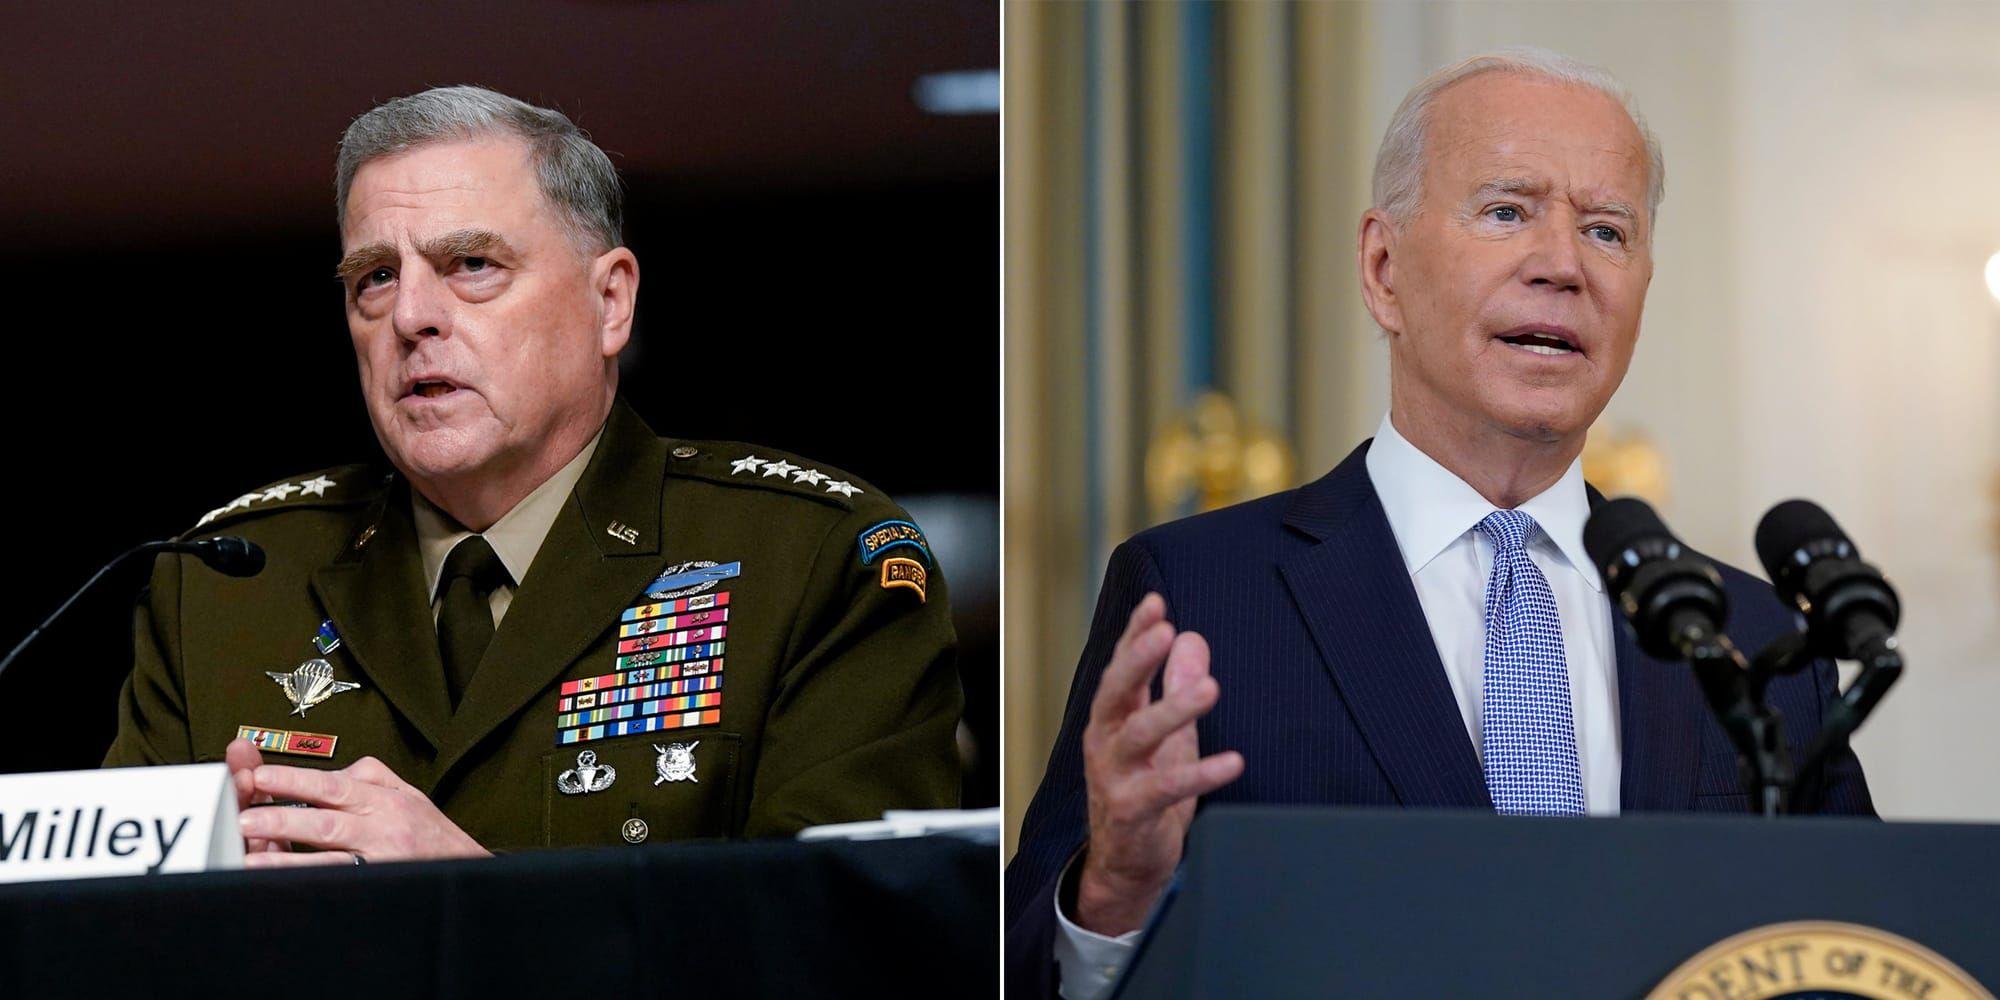 USA:s militäre befälhavare Mark Milley och presidenten Joe Biden hade olika syn på vilken närvaro USA borde haft efter uttåget ur Afghanistan. 